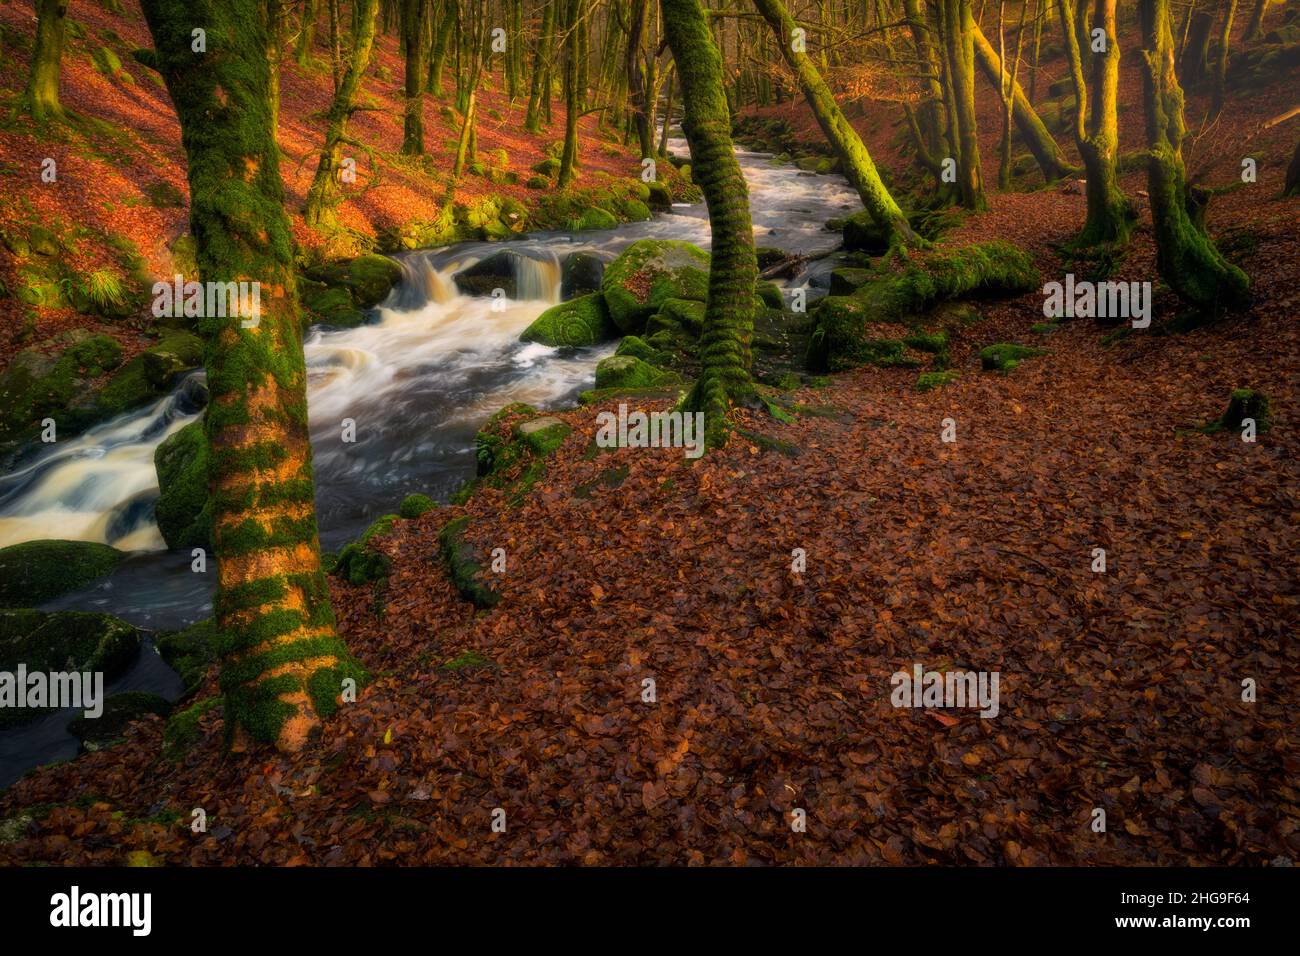 Símbolos celtas en el bosque mágico, Irlanda Foto de stock